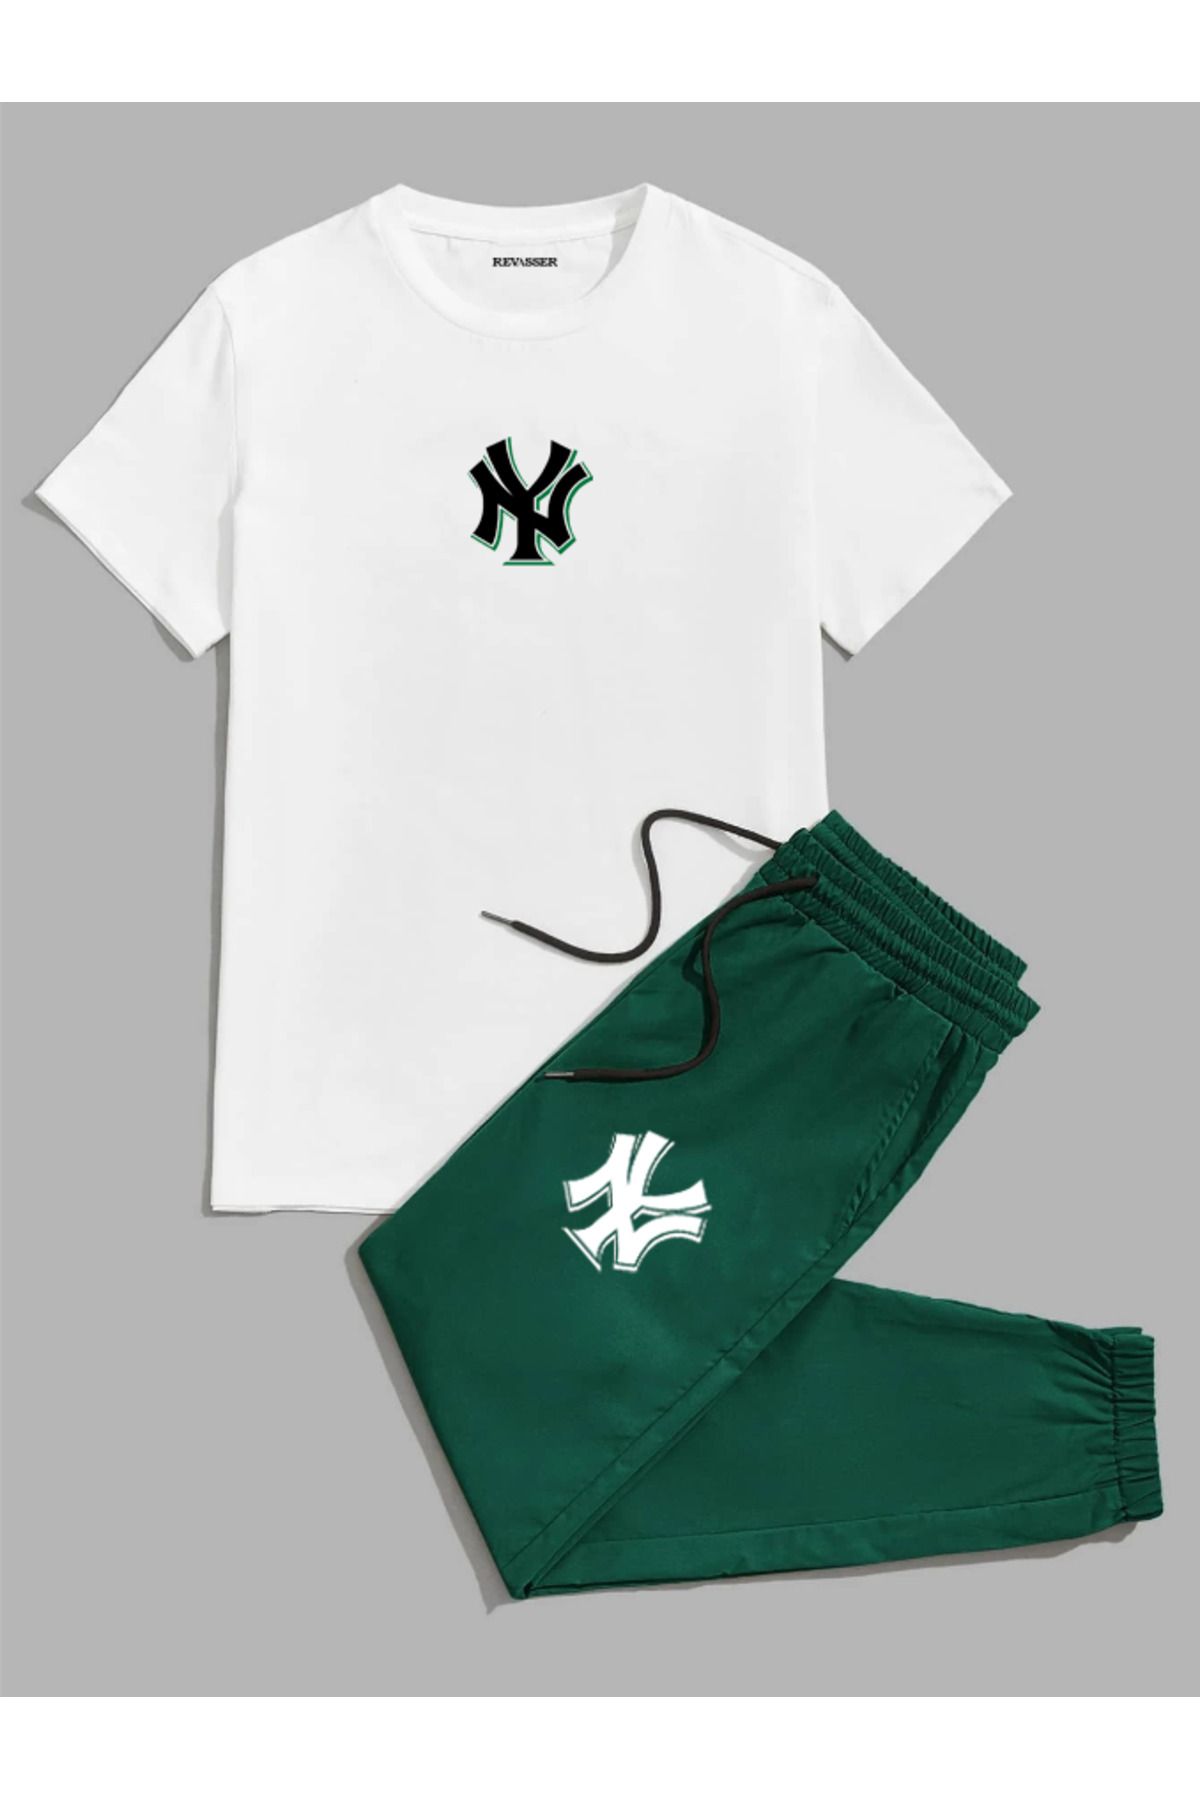 Revasser Unisex Erkek/Kadın NY Özel Baskılı Renkli Pamuklu Oversize Jogger T-shirt  Alt Üst Takım